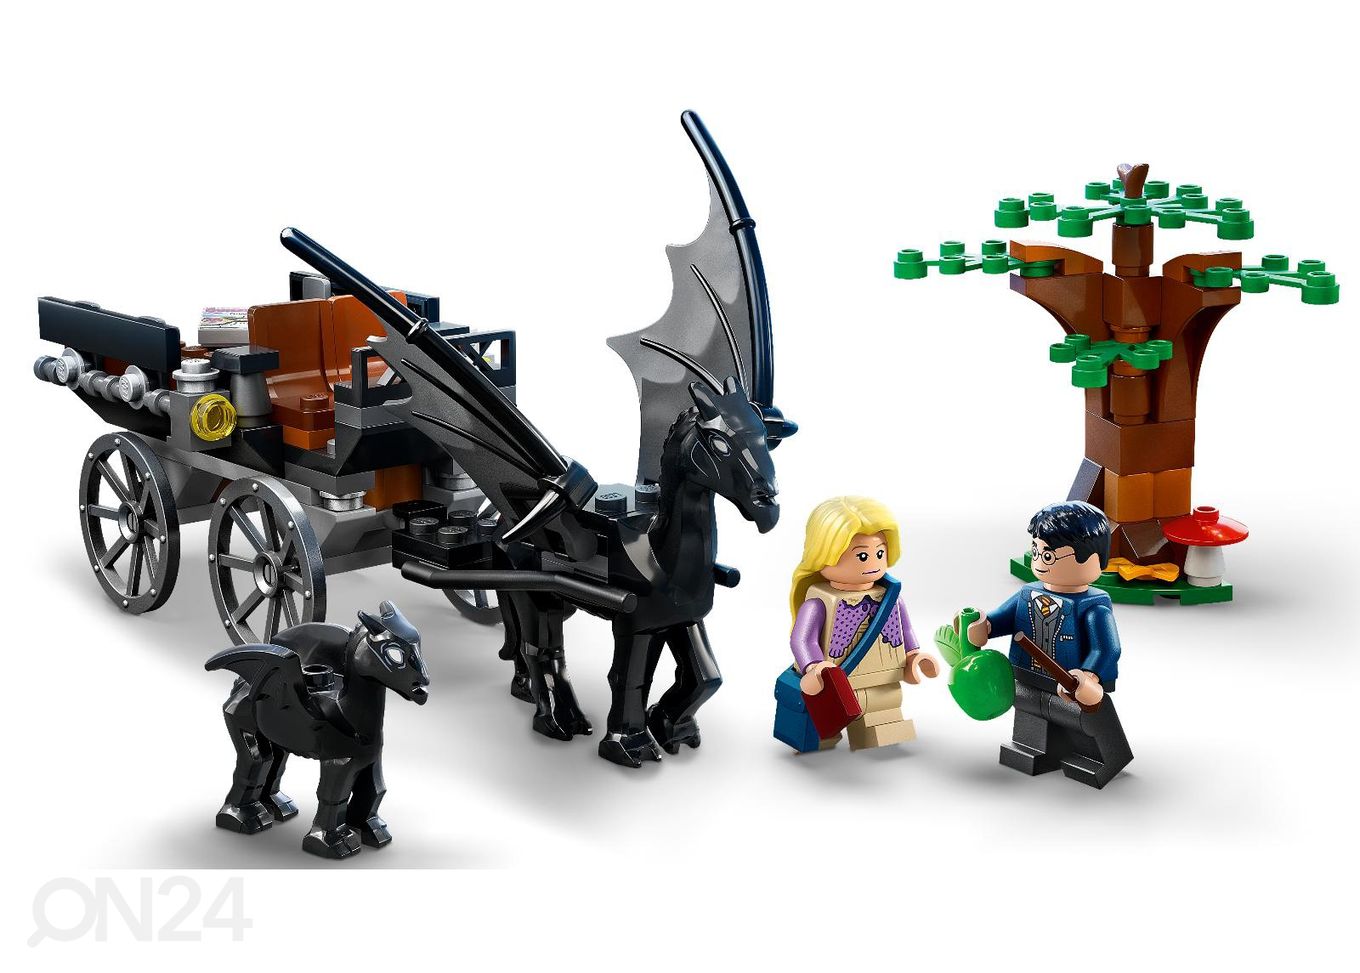 LEGO Harry Potter Sigatüüka tõld ja testralid suurendatud